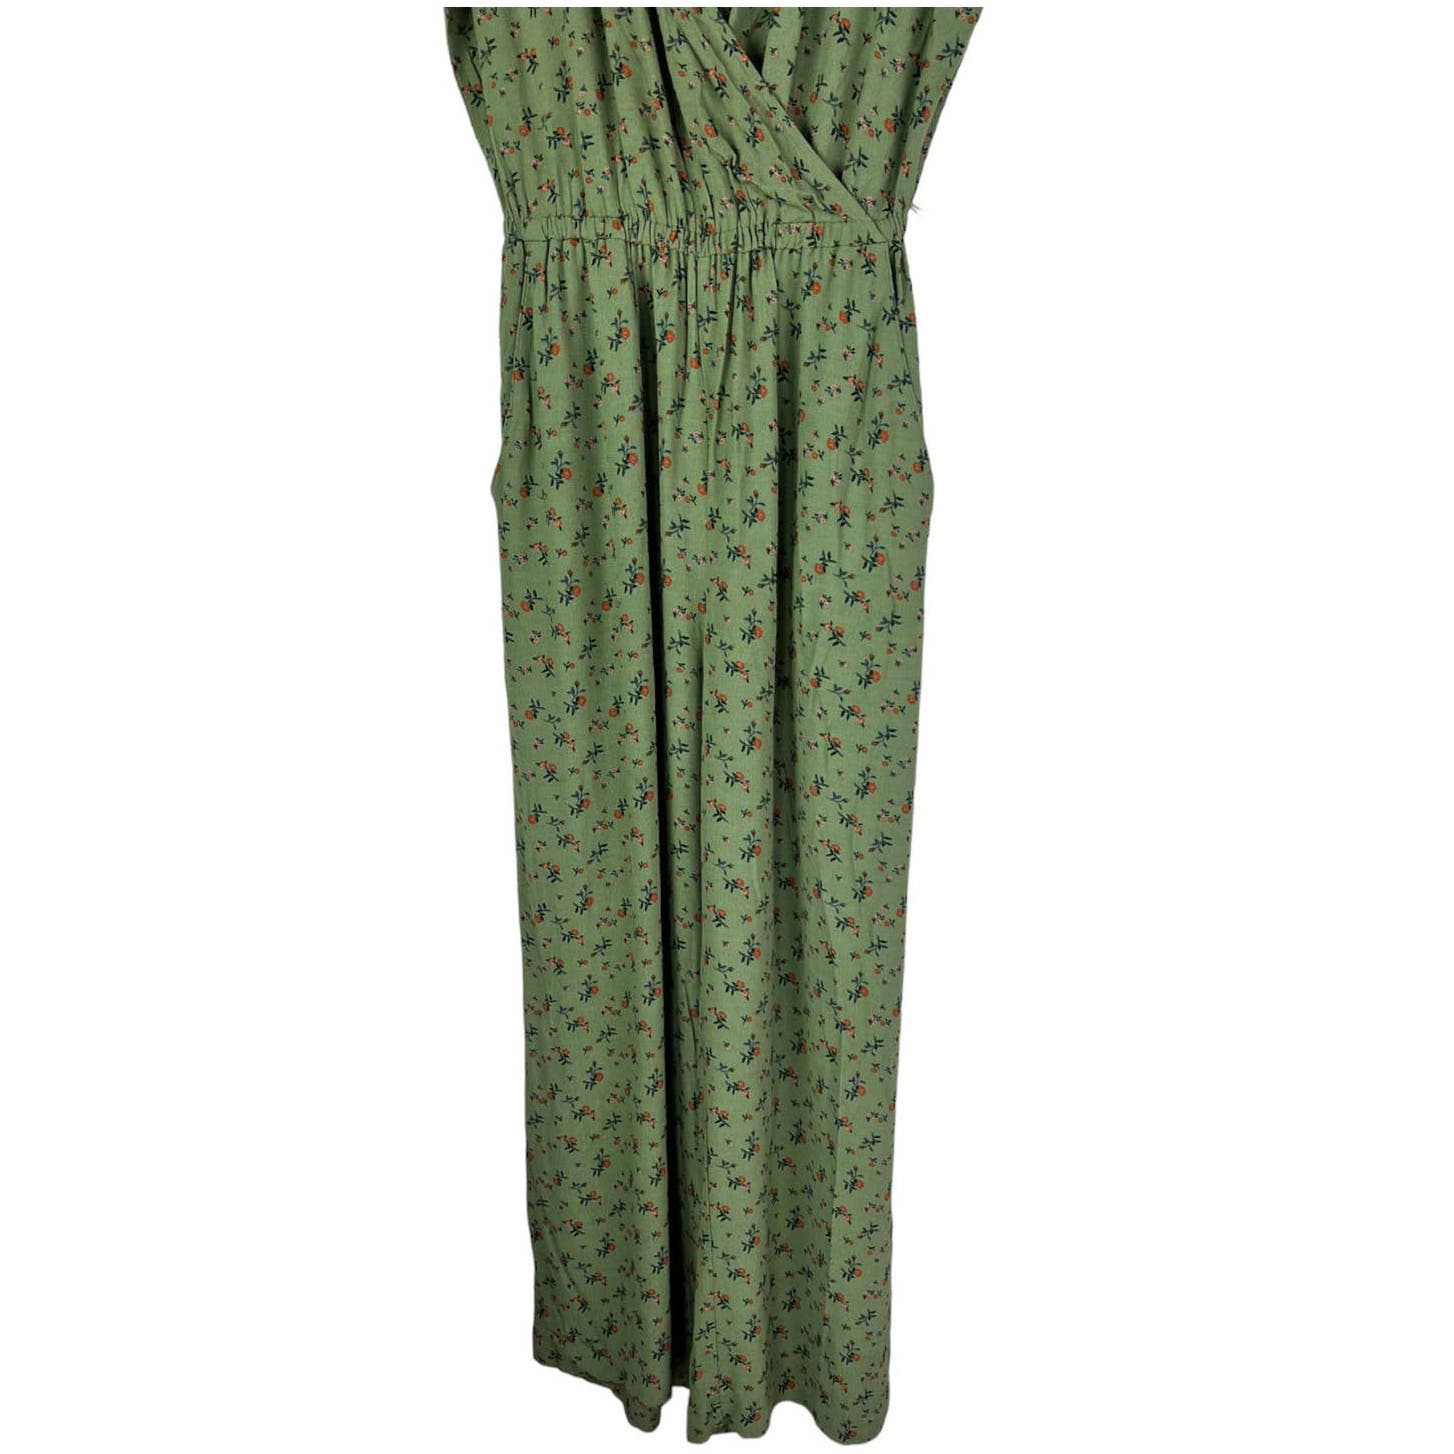 Sanctuary Women Green Jumpsuit US S V-Neck Wrap Floral Print Dress